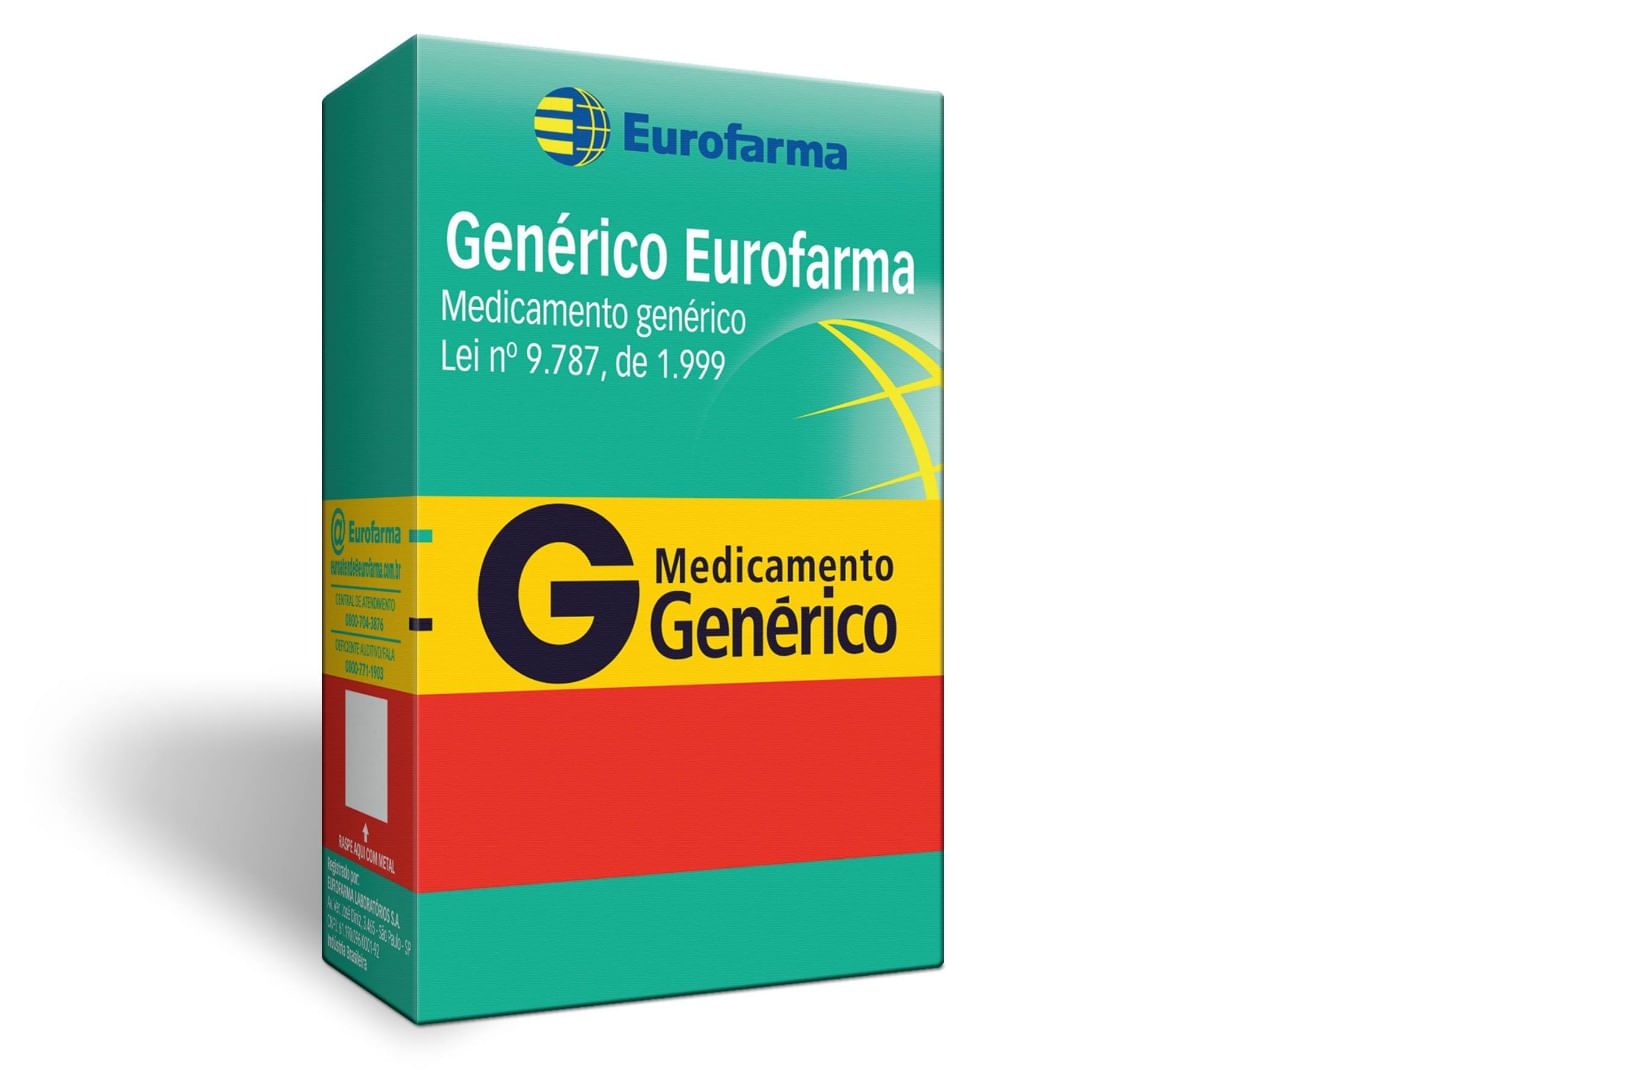 Zolpidem 5mg 30 Comprimidos - Eurofarma Genérico